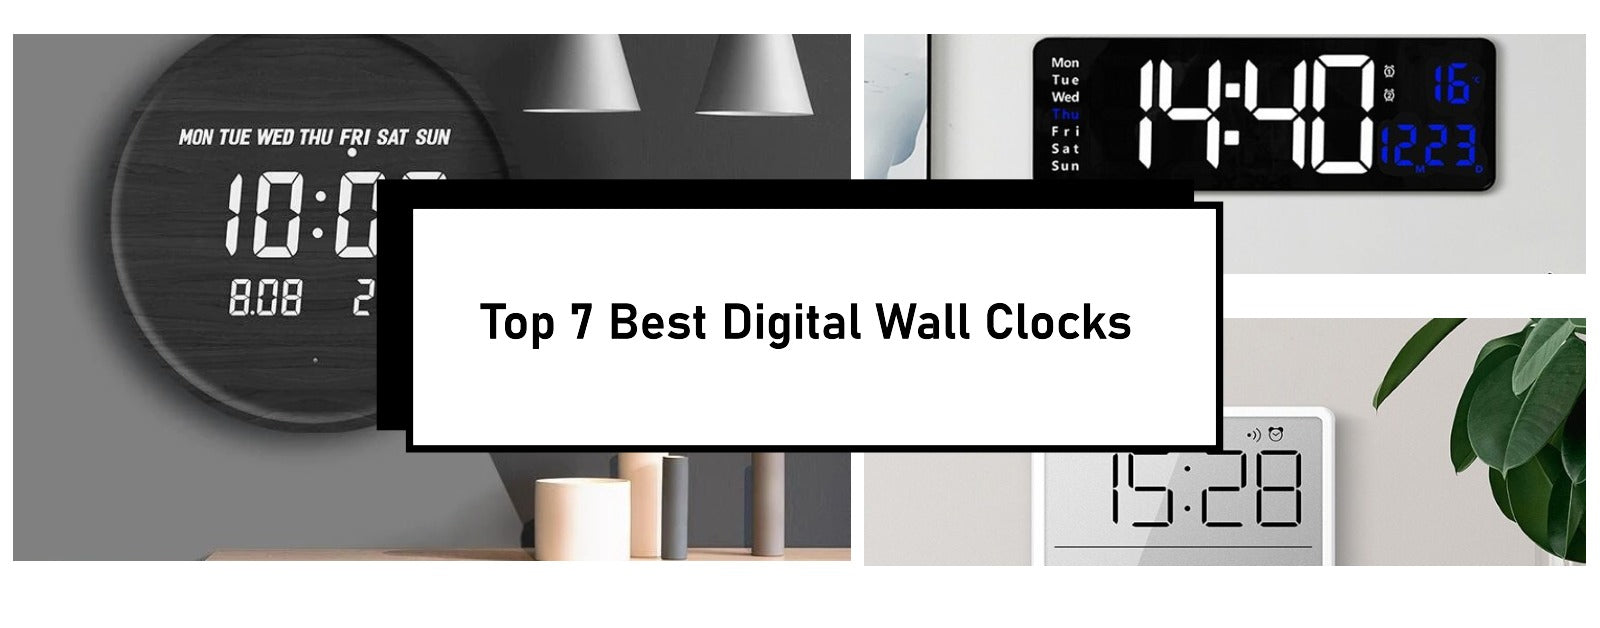 cool digital clocks